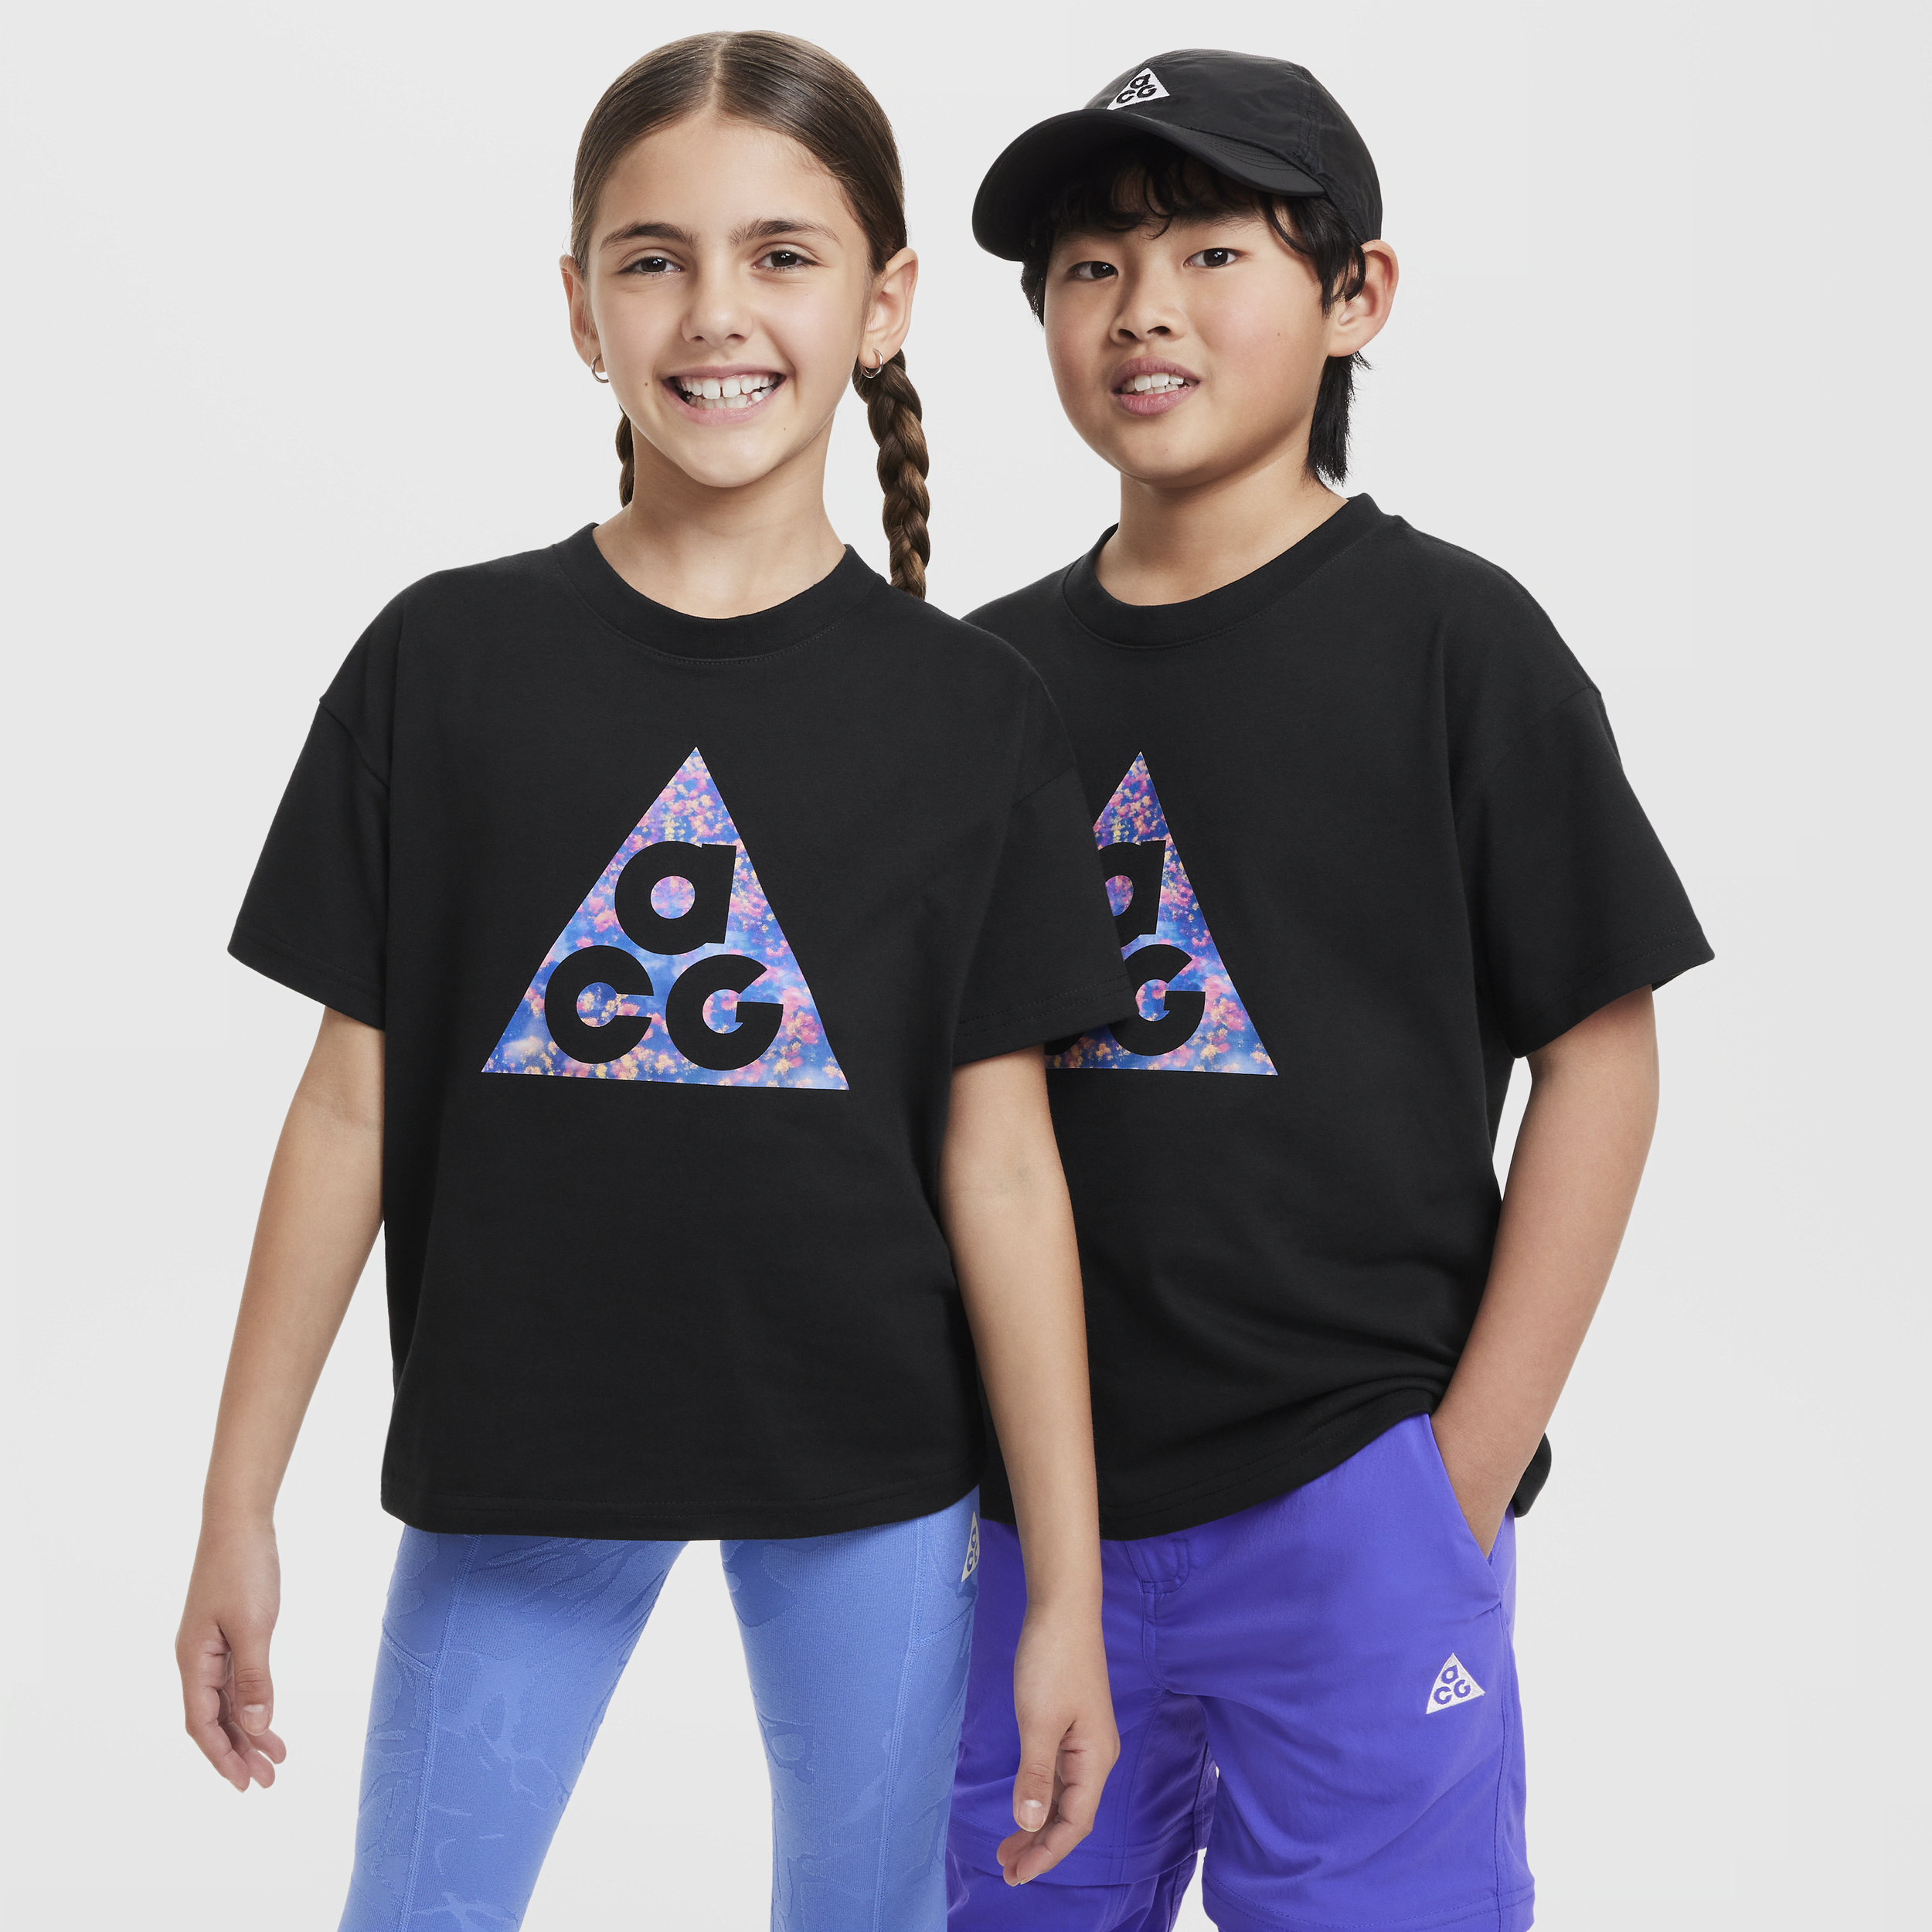 Nike ACG T-shirt voor kids - Zwart